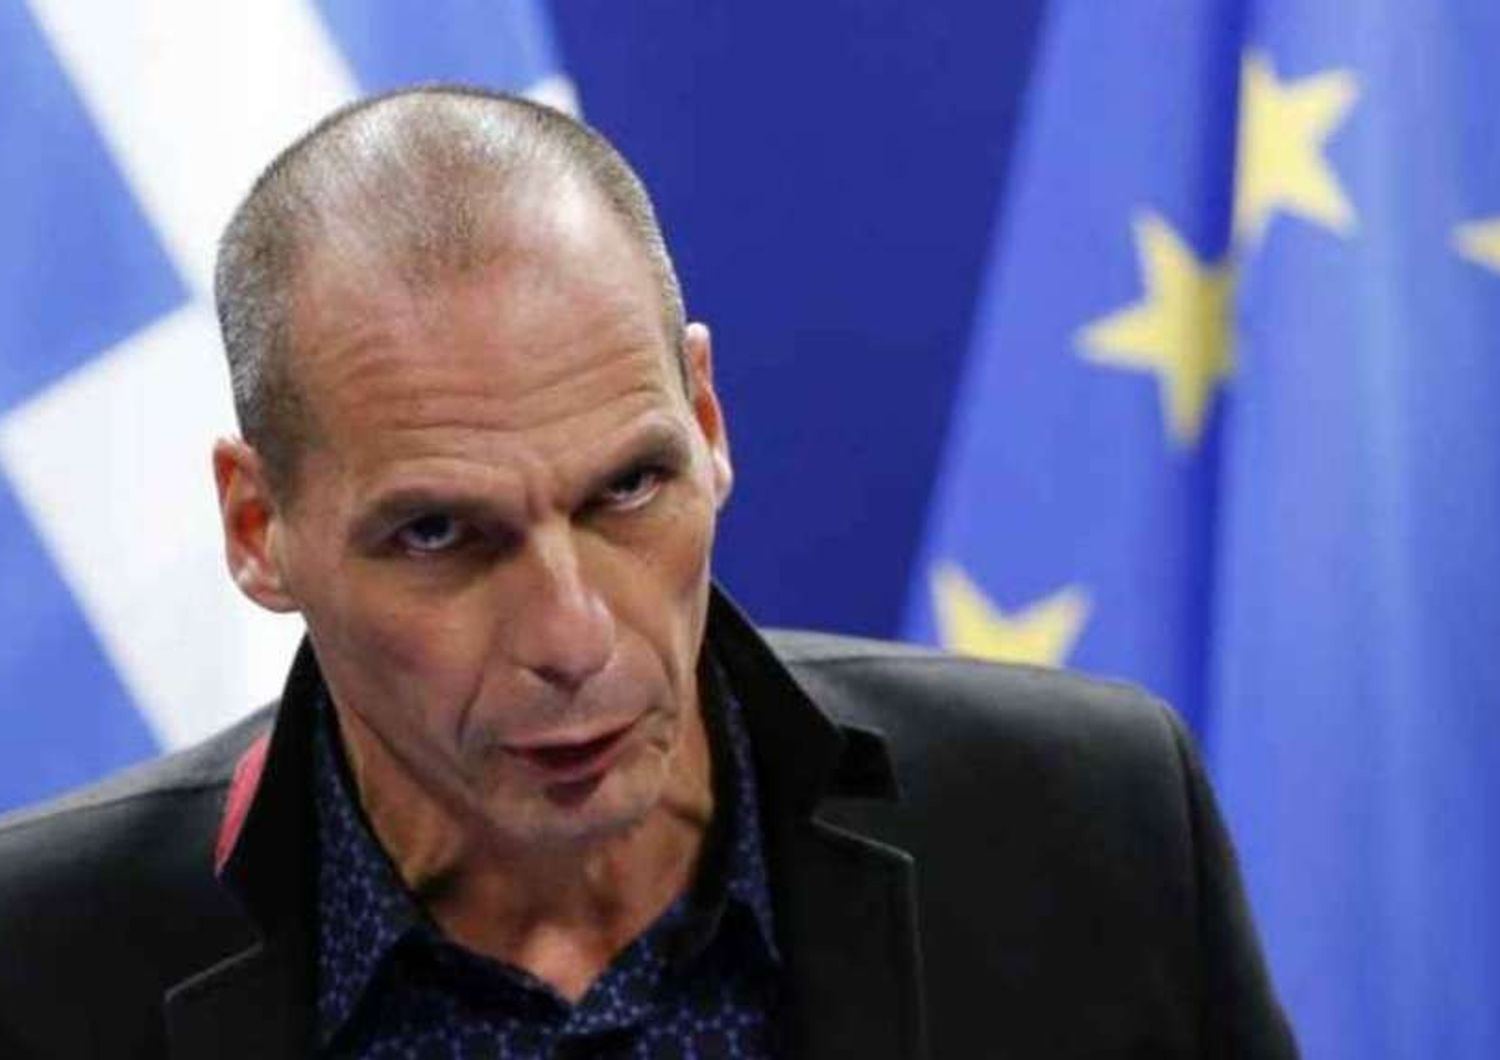 Grecia: Varoufakis, rinegoziare debito con Bce, non abbiamo soldi